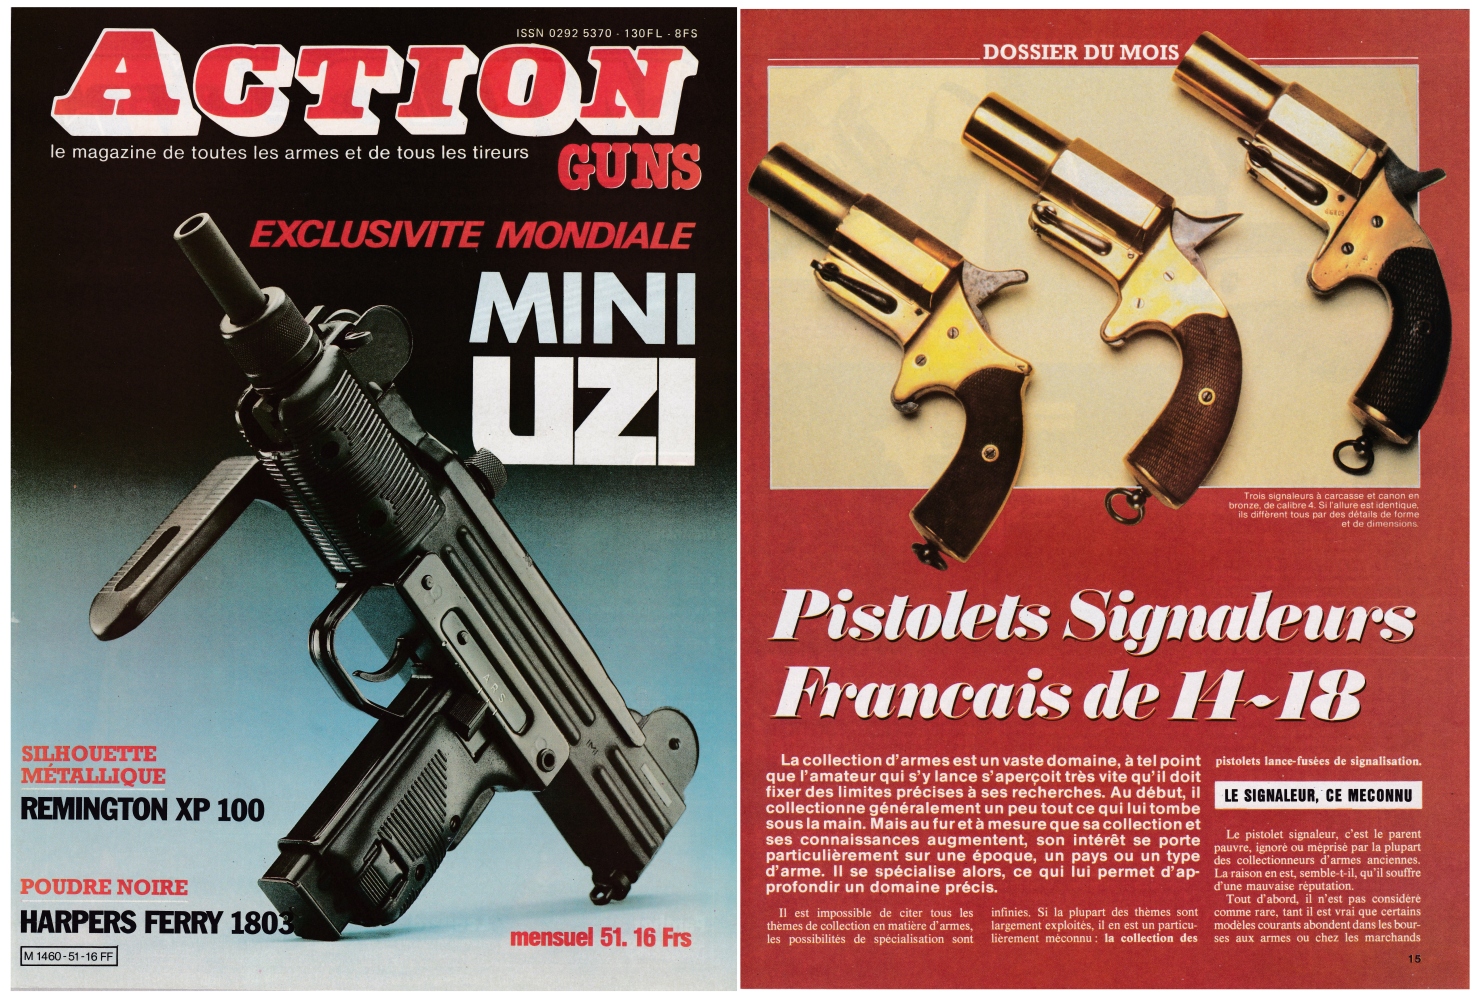 Les pistolets signaleurs français de 14-18 (1ère partie) ont fait l'objet d'une publication sur 5 pages dans le magazine Action Guns N°51 (mars 1983).